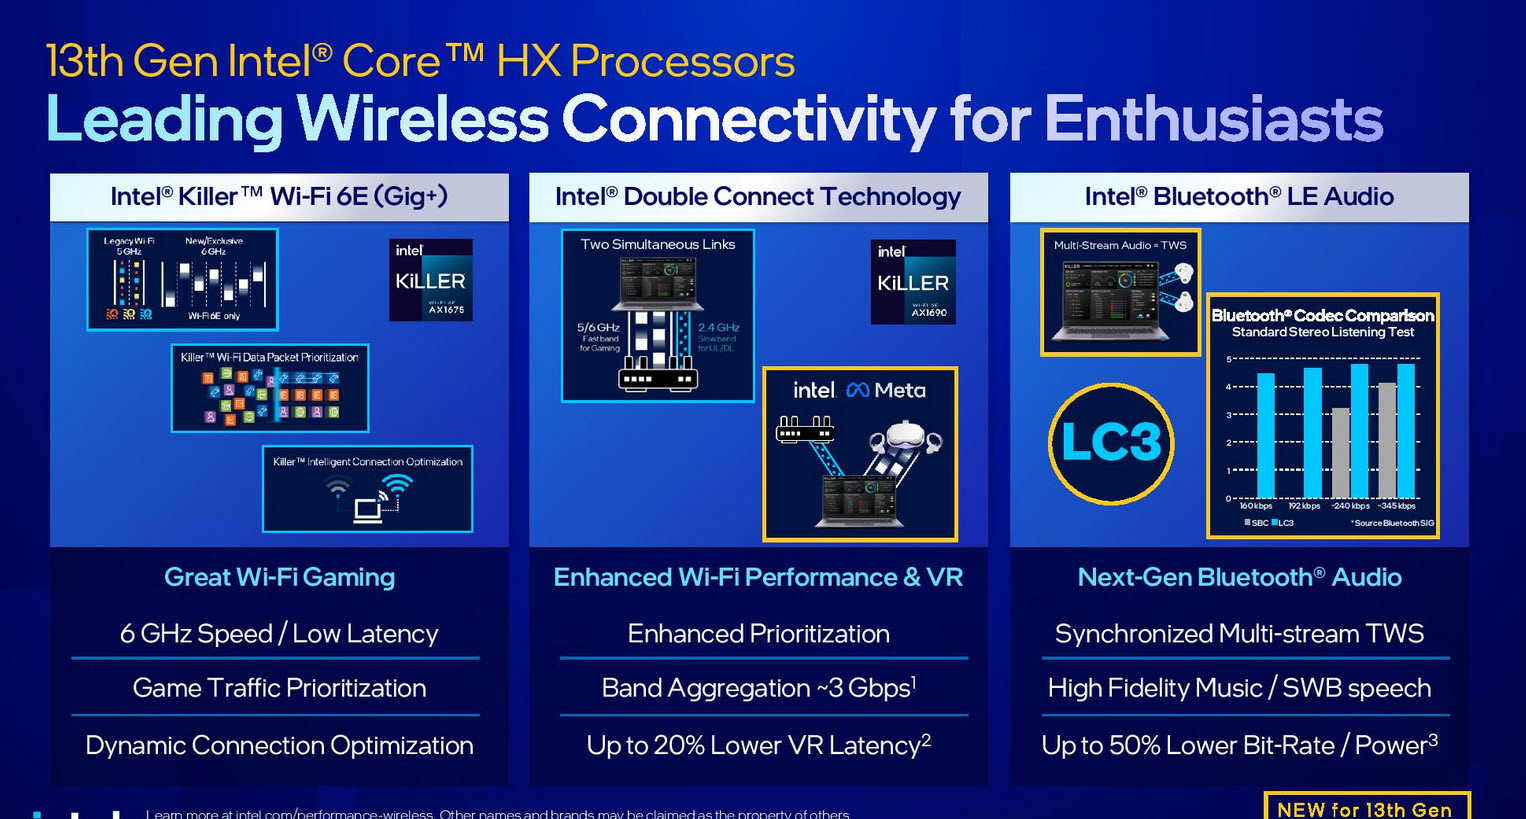 2023 01 05 11 09 00 อินเทลเปิดตัวซีพียู Intel 13th Gen ในรุ่น Mobile ใช้งานในแล็ปท็อปรหัส HX/H/P/U series รุ่นใหม่ล่าสุดมากถึง 23รุ่น รุ่นท็อป Core i9 13980HX 24C/32T ความเร็ว 5.6Ghz 